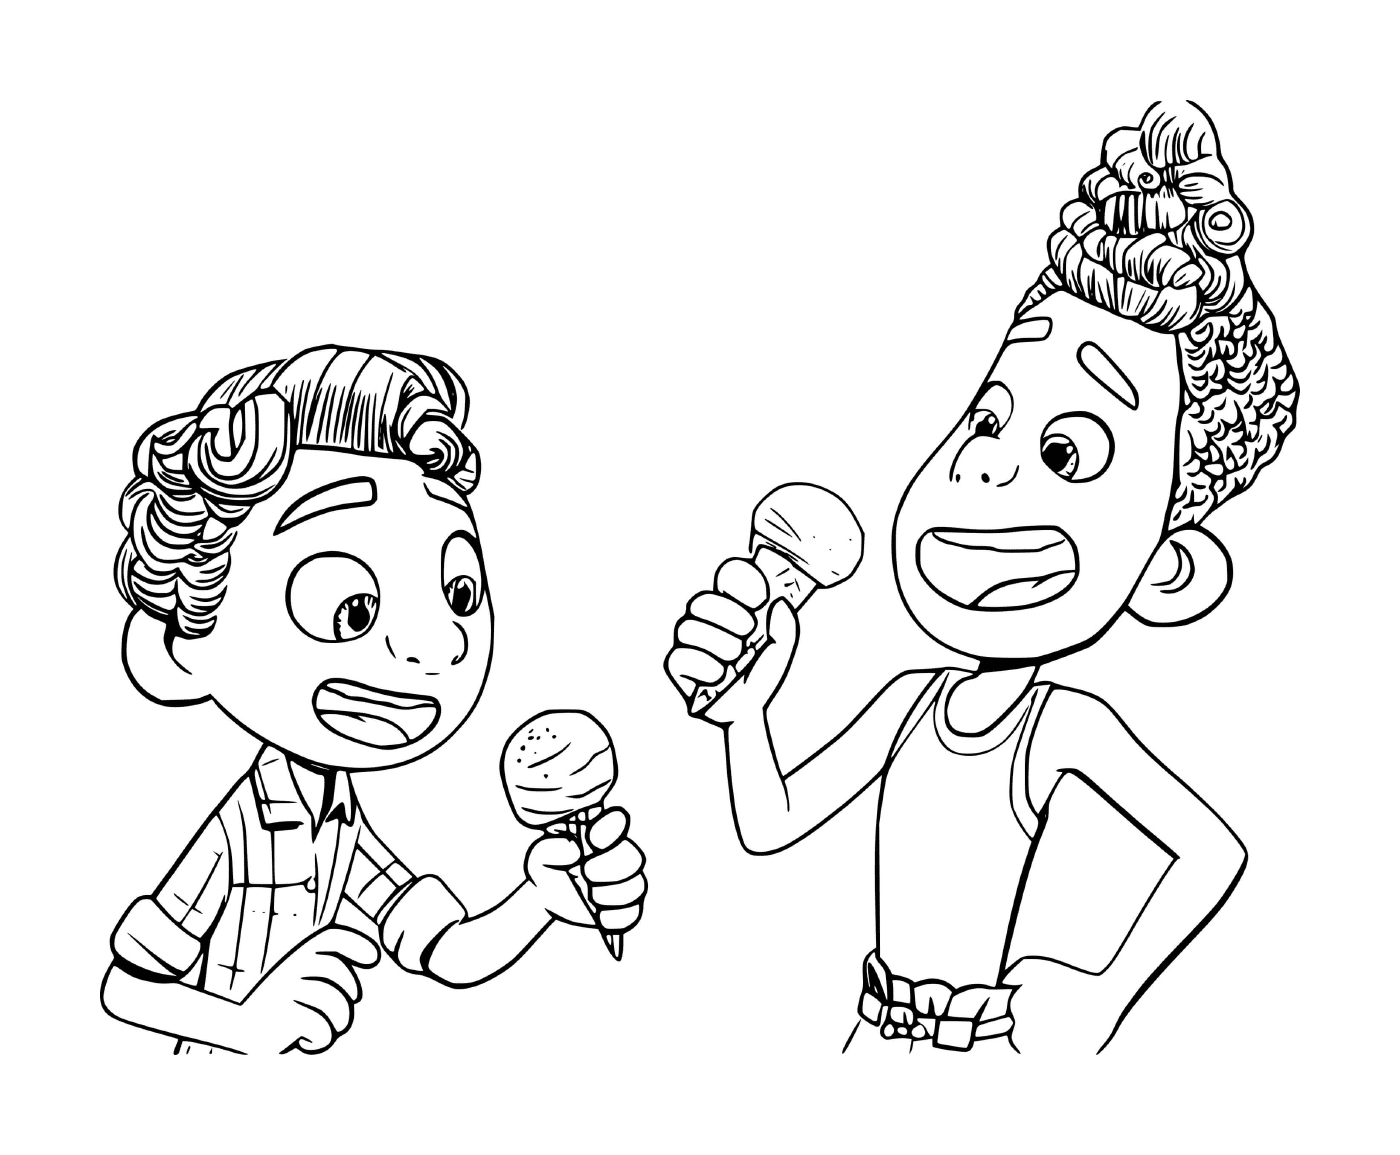  Dos personas comiendo helado 